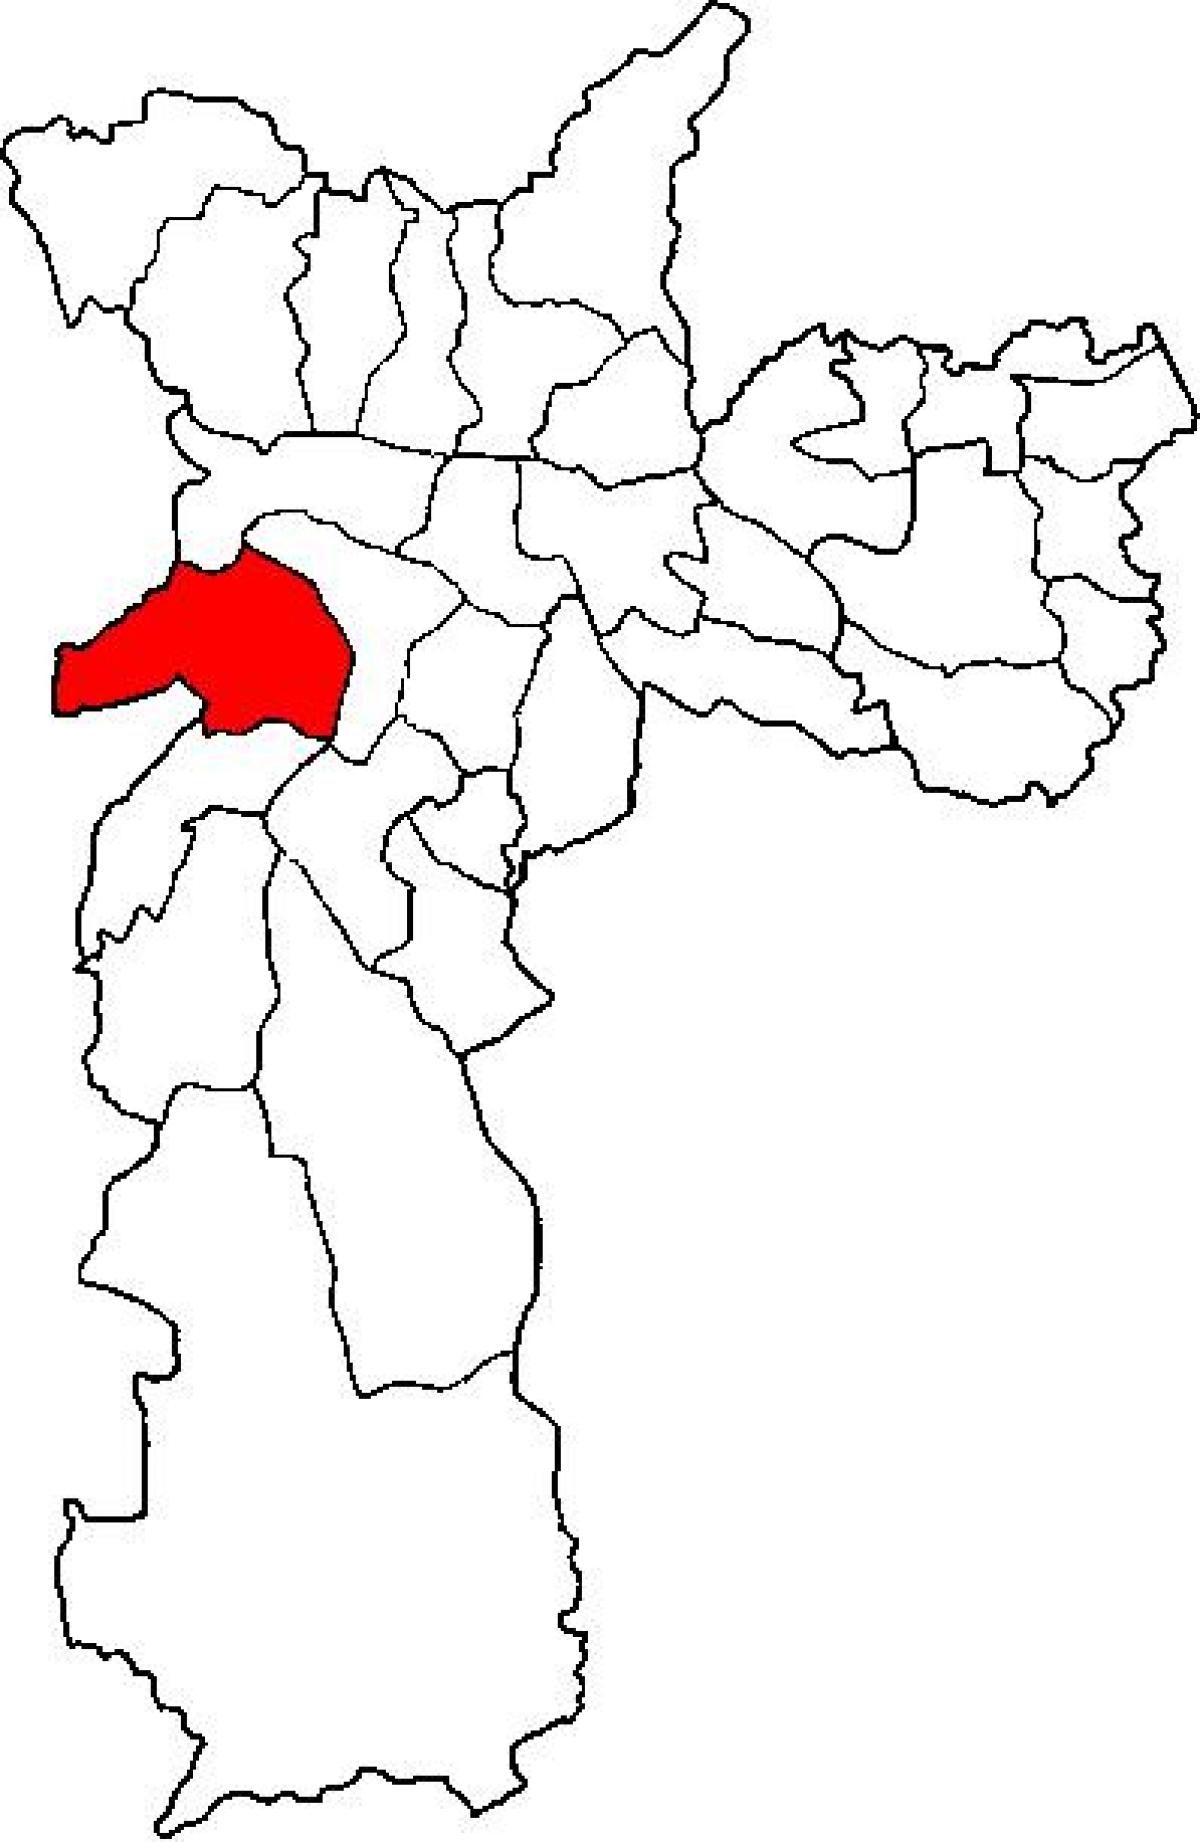 Kaart van Butantã sub-prefektuur São Paulo